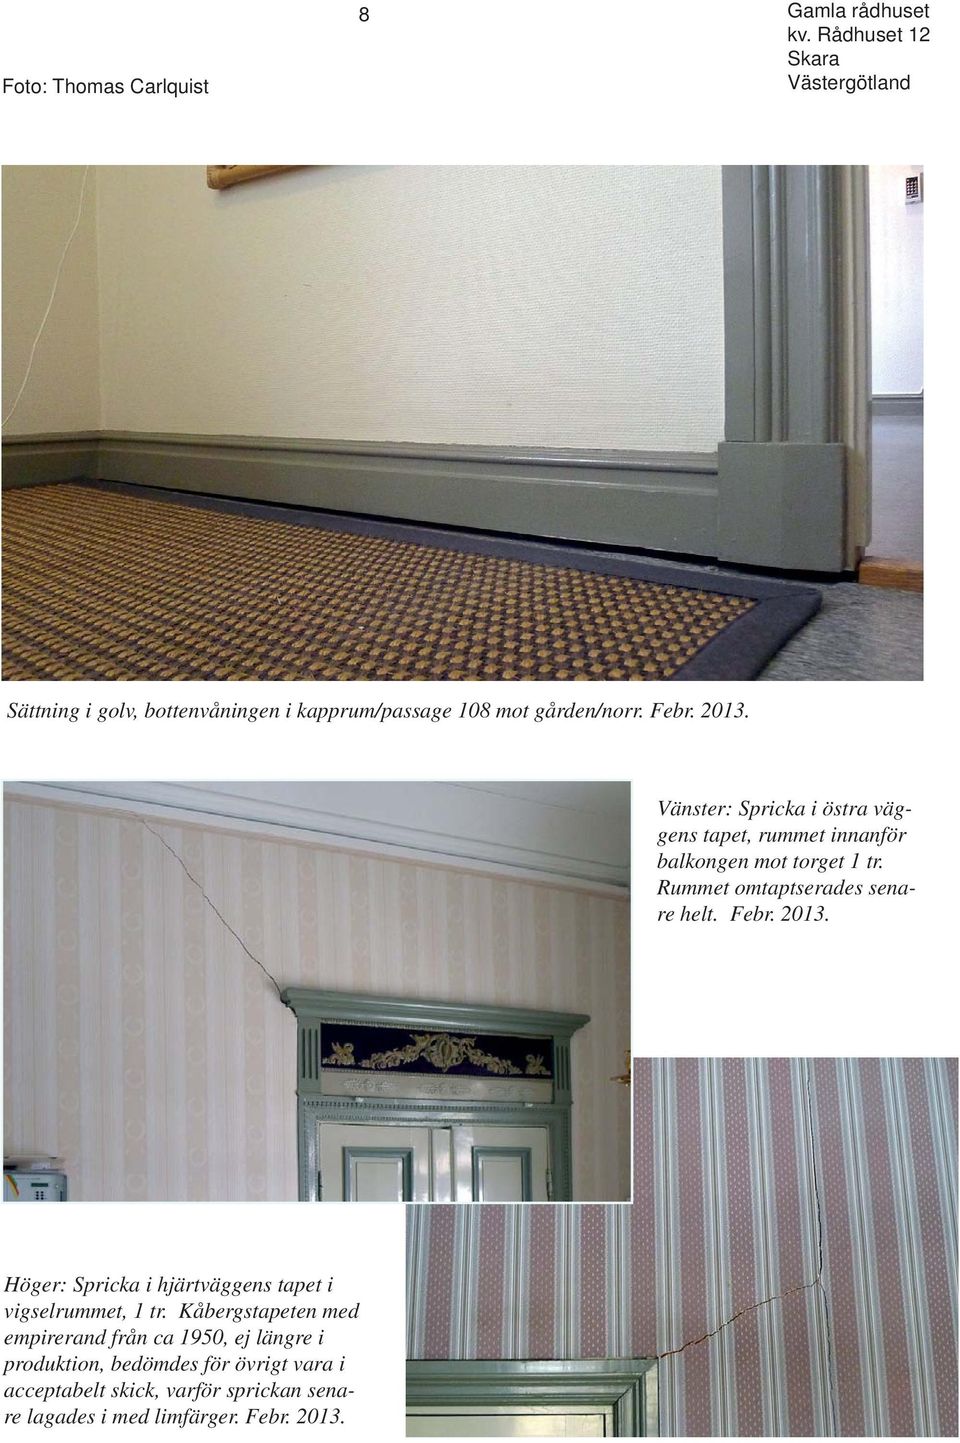 Rummet omtaptserades senare helt. Febr. 2013. Höger: Spricka i hjärtväggens tapet i vigselrummet, 1 tr.